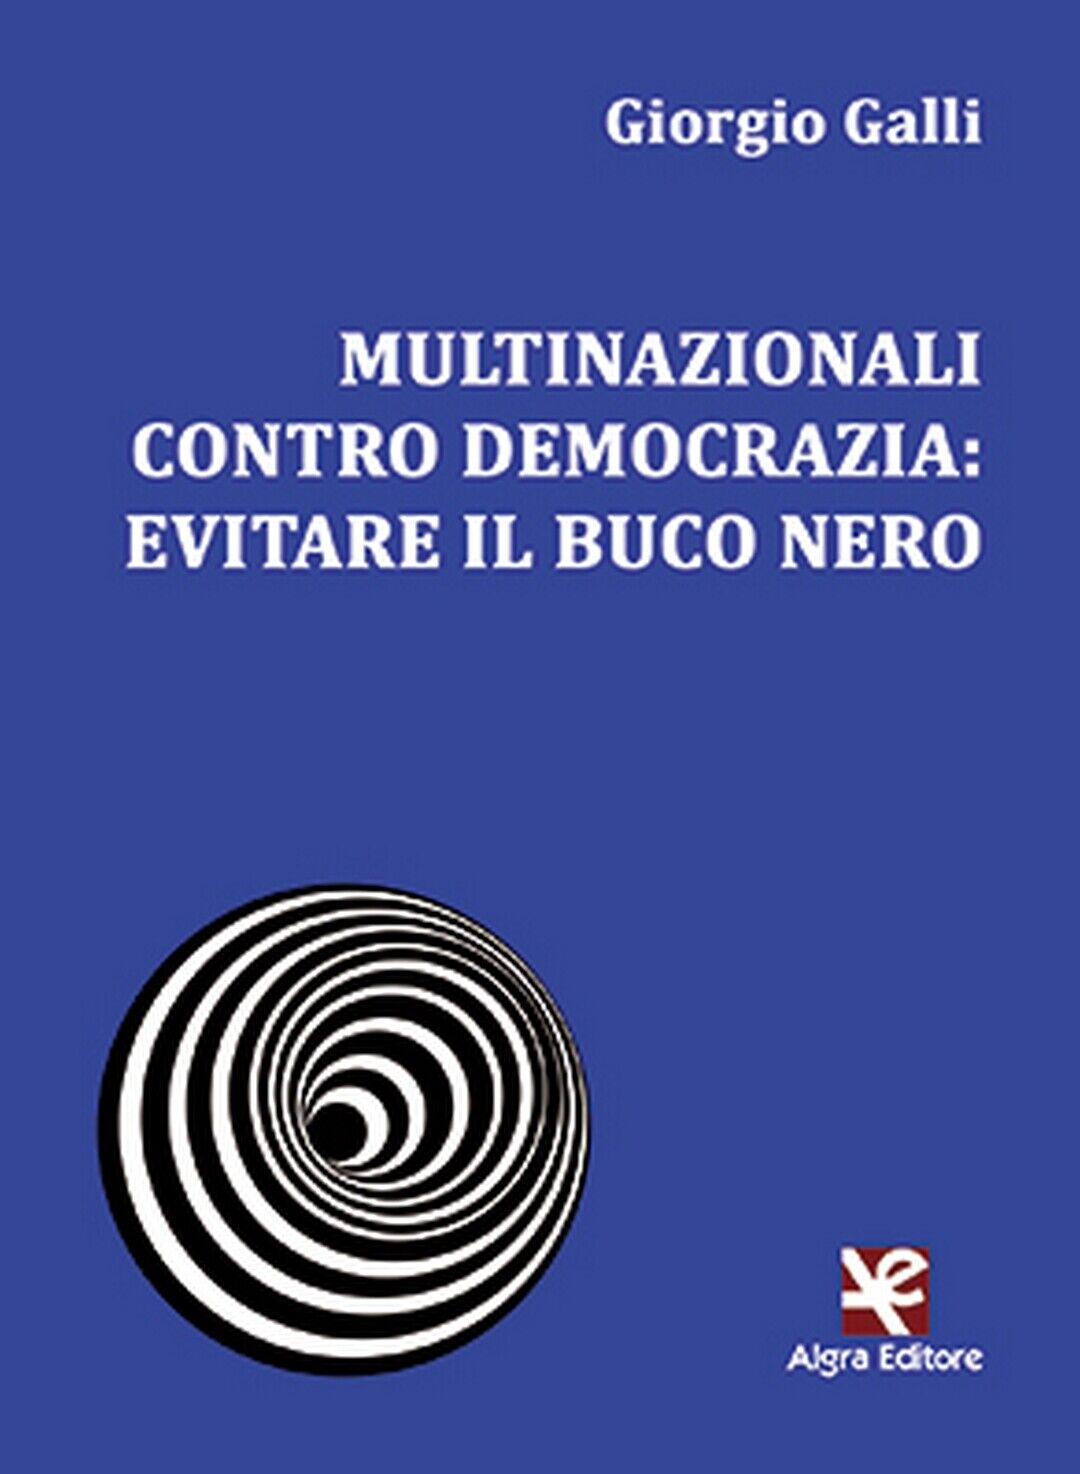 Multinazionali contro democrazia: evitare il buco nero  di Giorgio Galli,  Algra